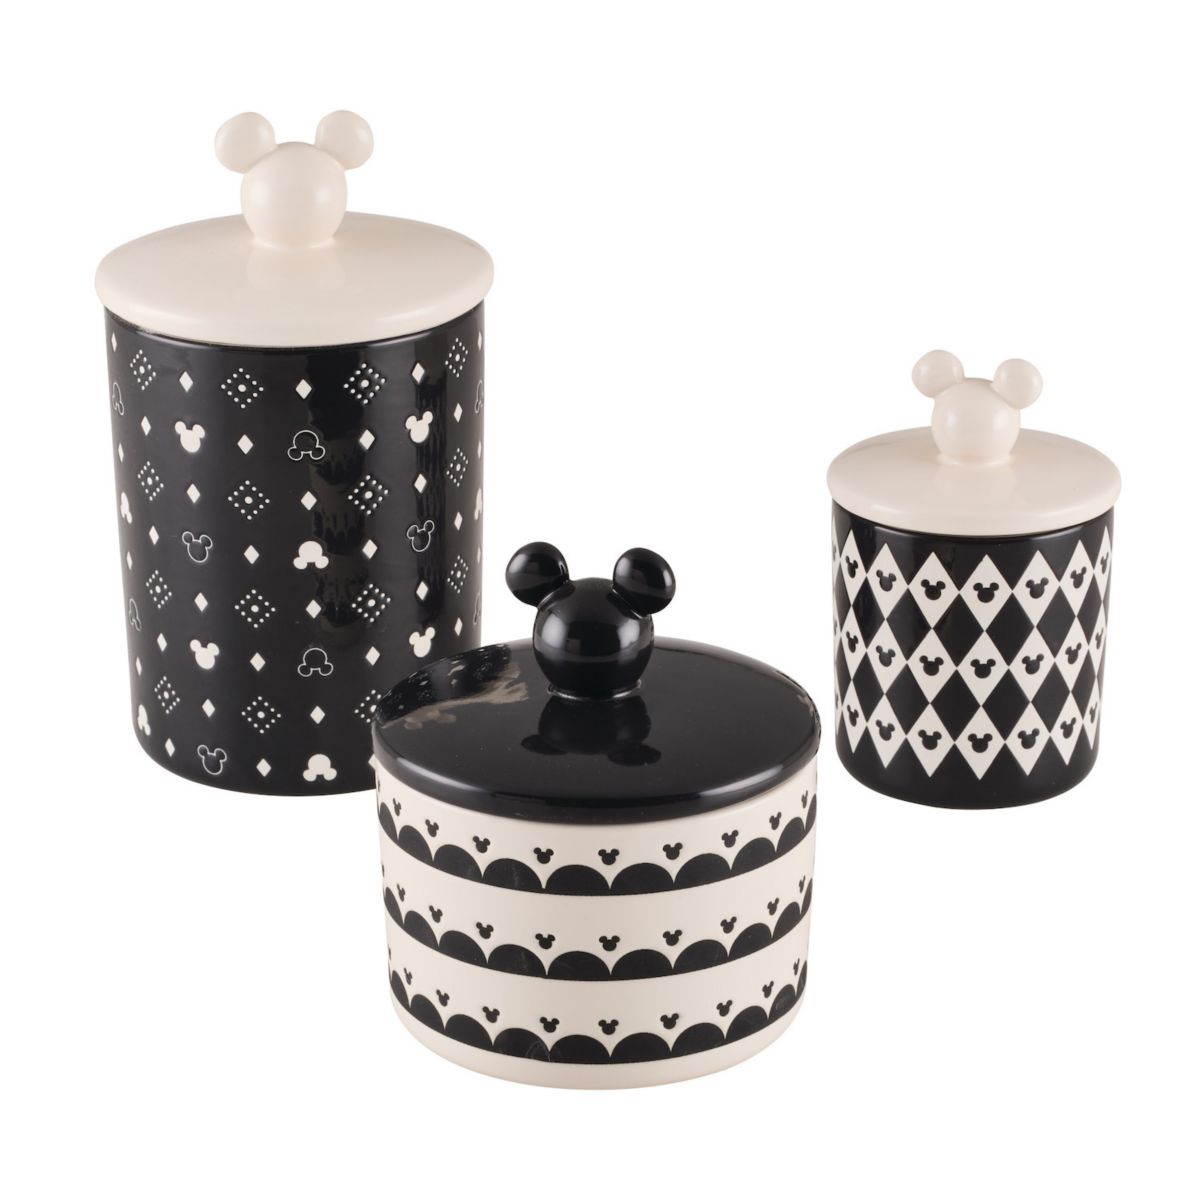 Disney Home Monochrome 3-pc. Ceramic Jar Set Disney Home